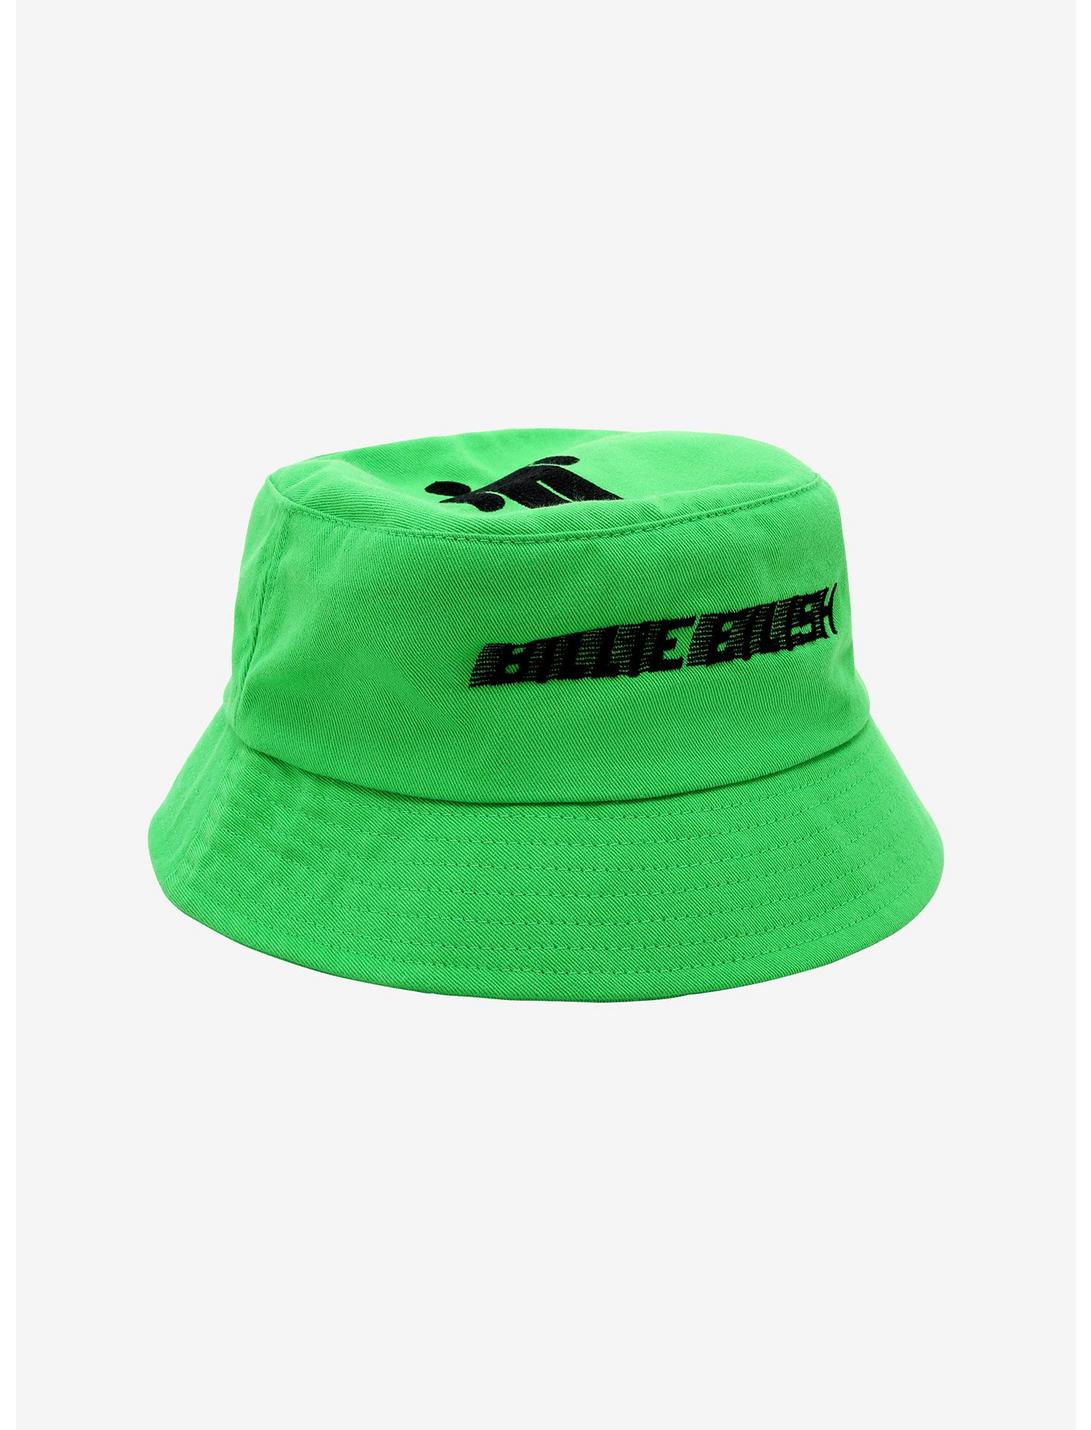 Billie Eilish Green Bucket Hat, , hi-res